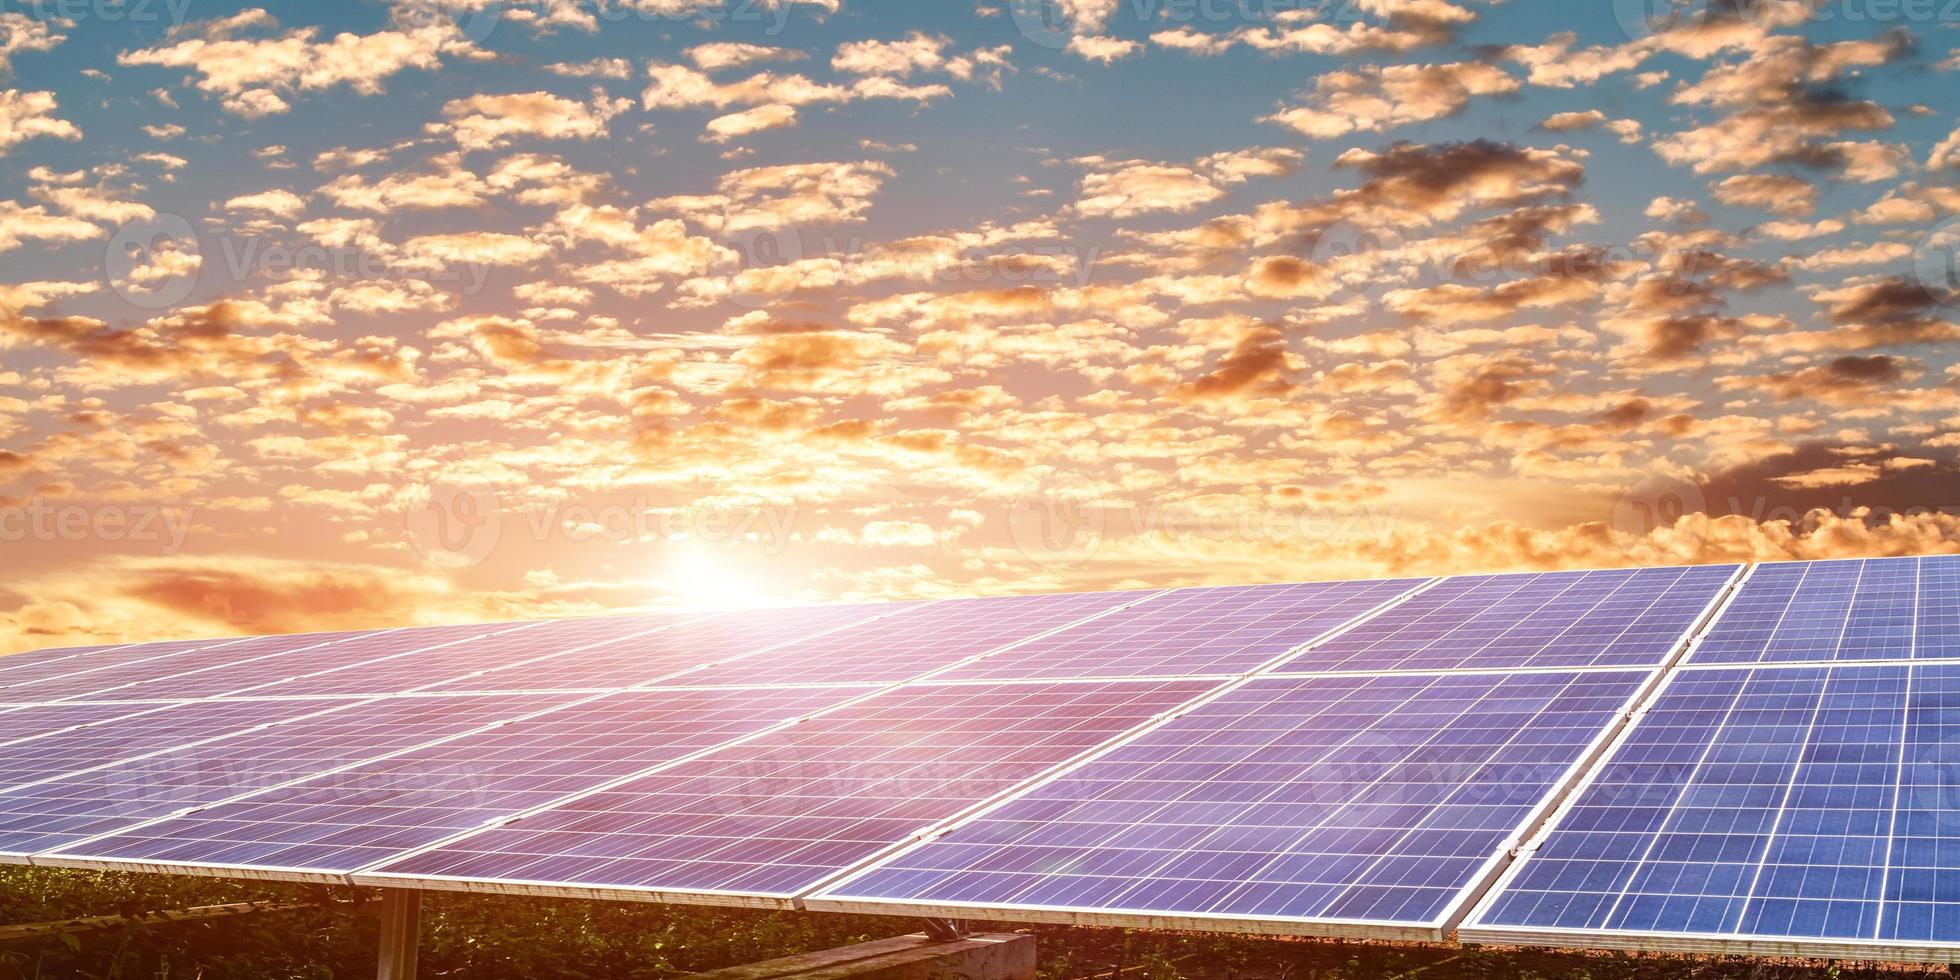 panel solar contra el fondo del cielo del atardecer, fotovoltaica, fuente de electricidad alternativa, módulos de energía renovable. concepto de recursos energéticos sostenibles foto